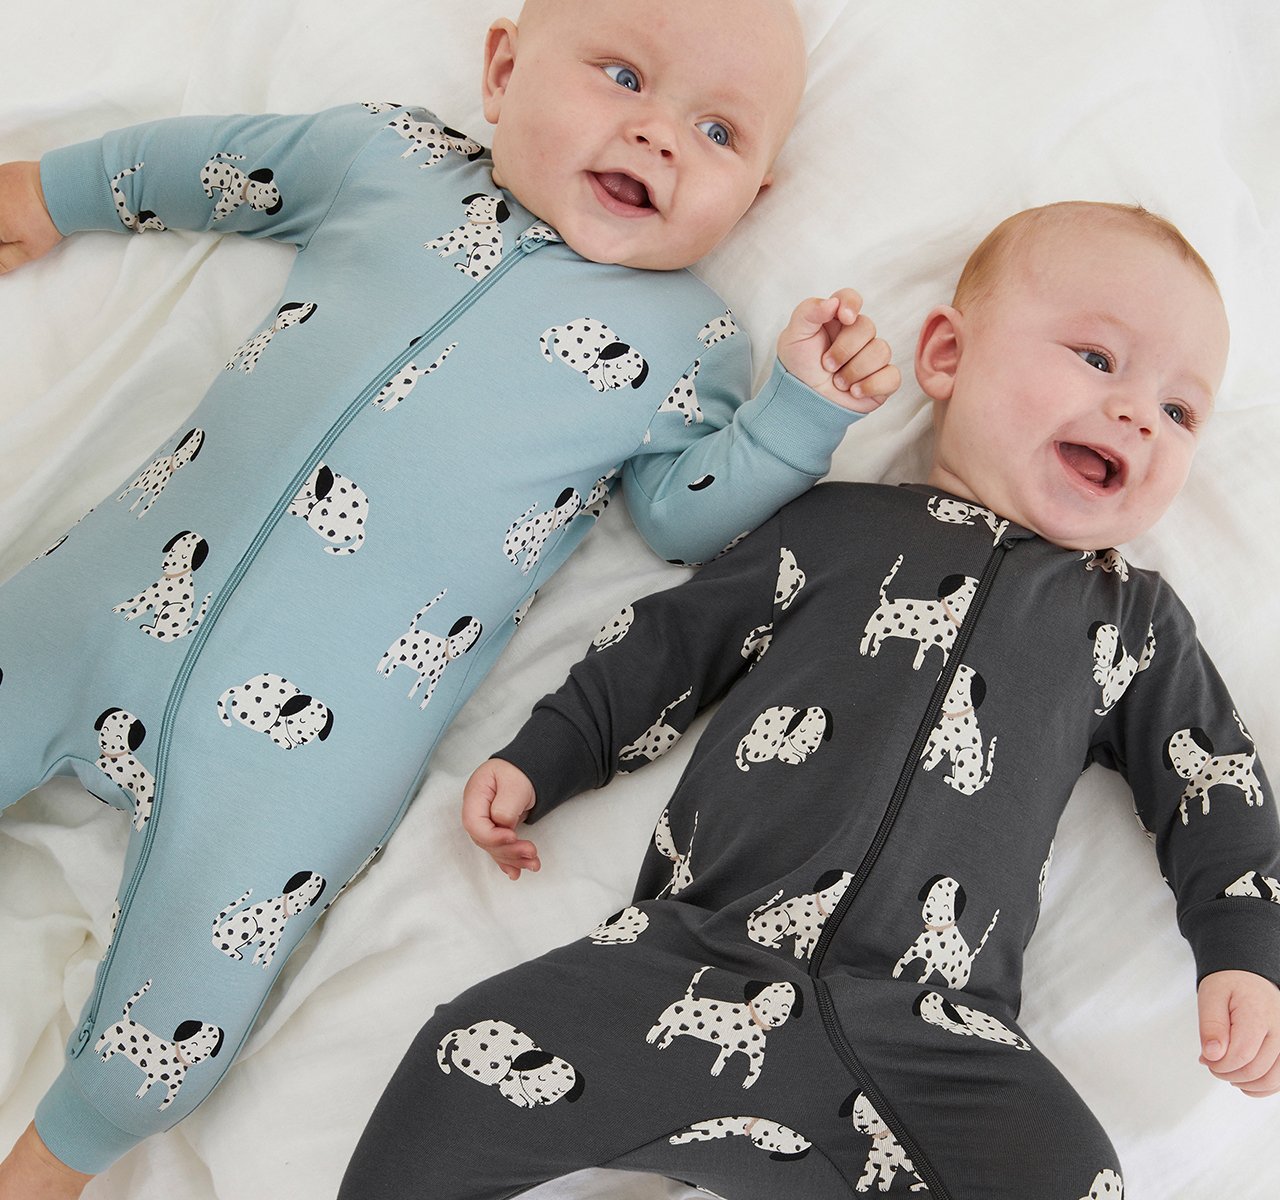 två bebisar i mjuka och sköna pyjamaser